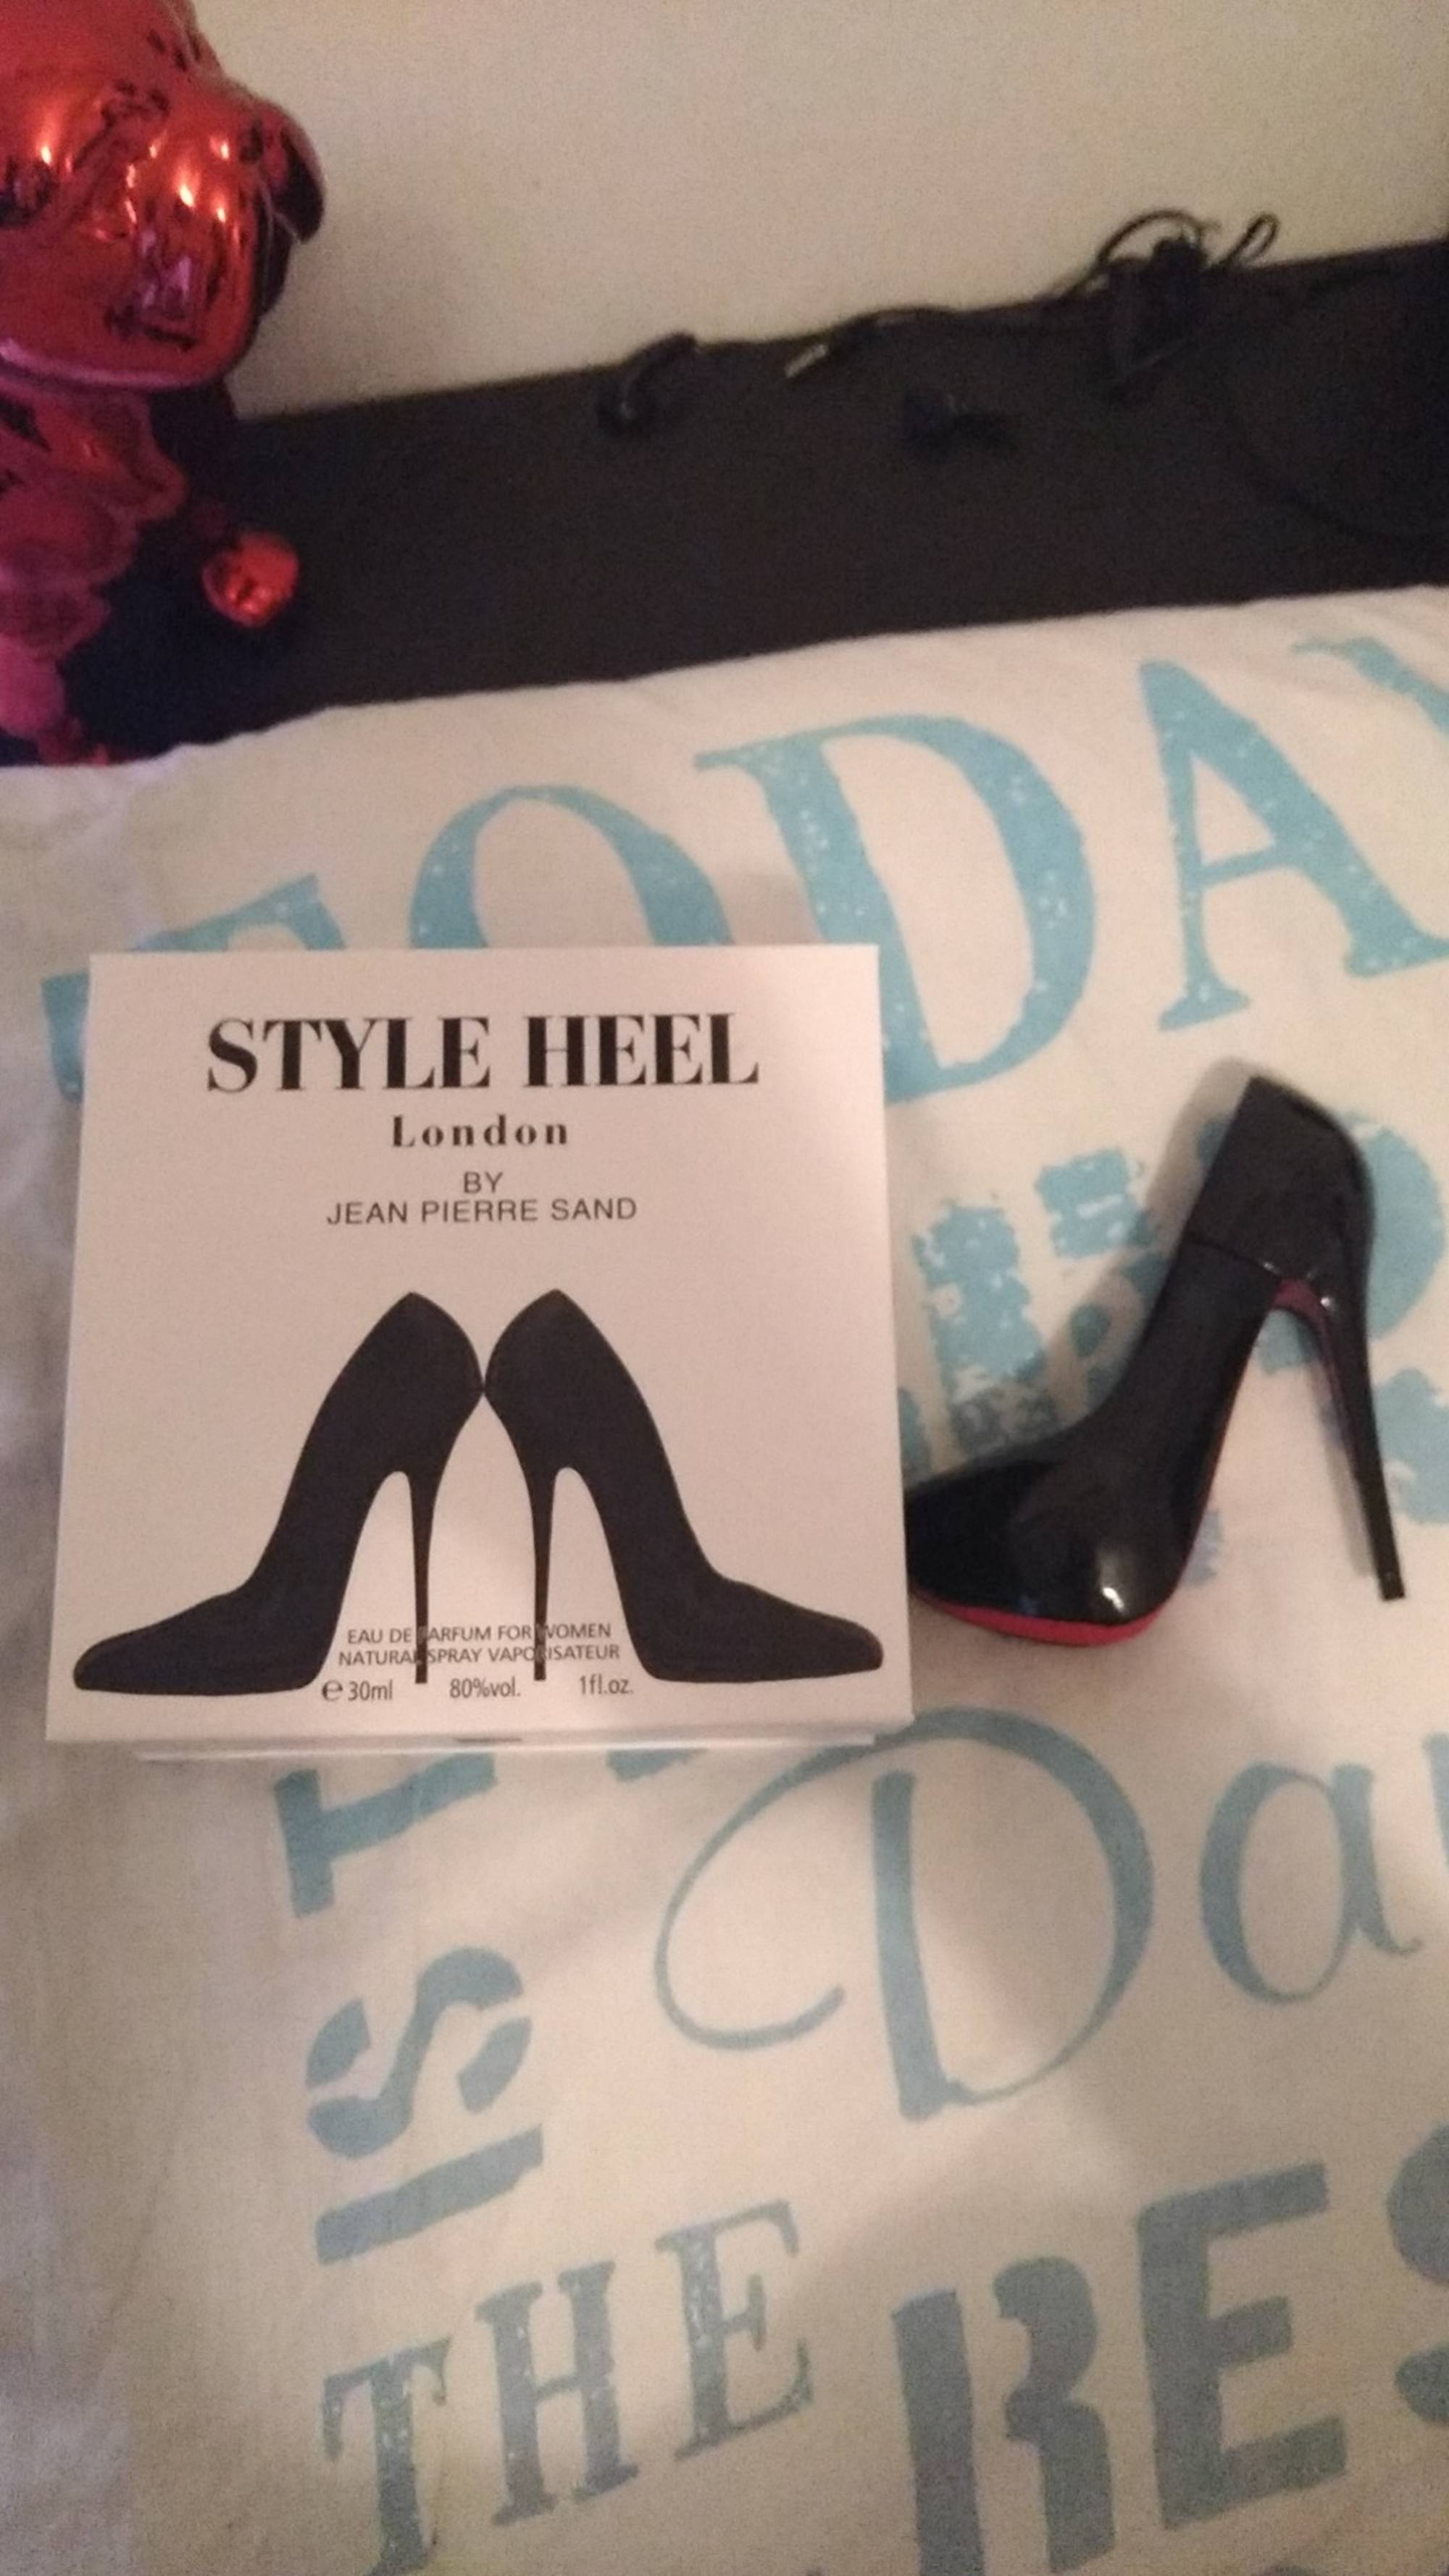 JEAN-PIERRE SAND - Style heel - Eau de parfum for women